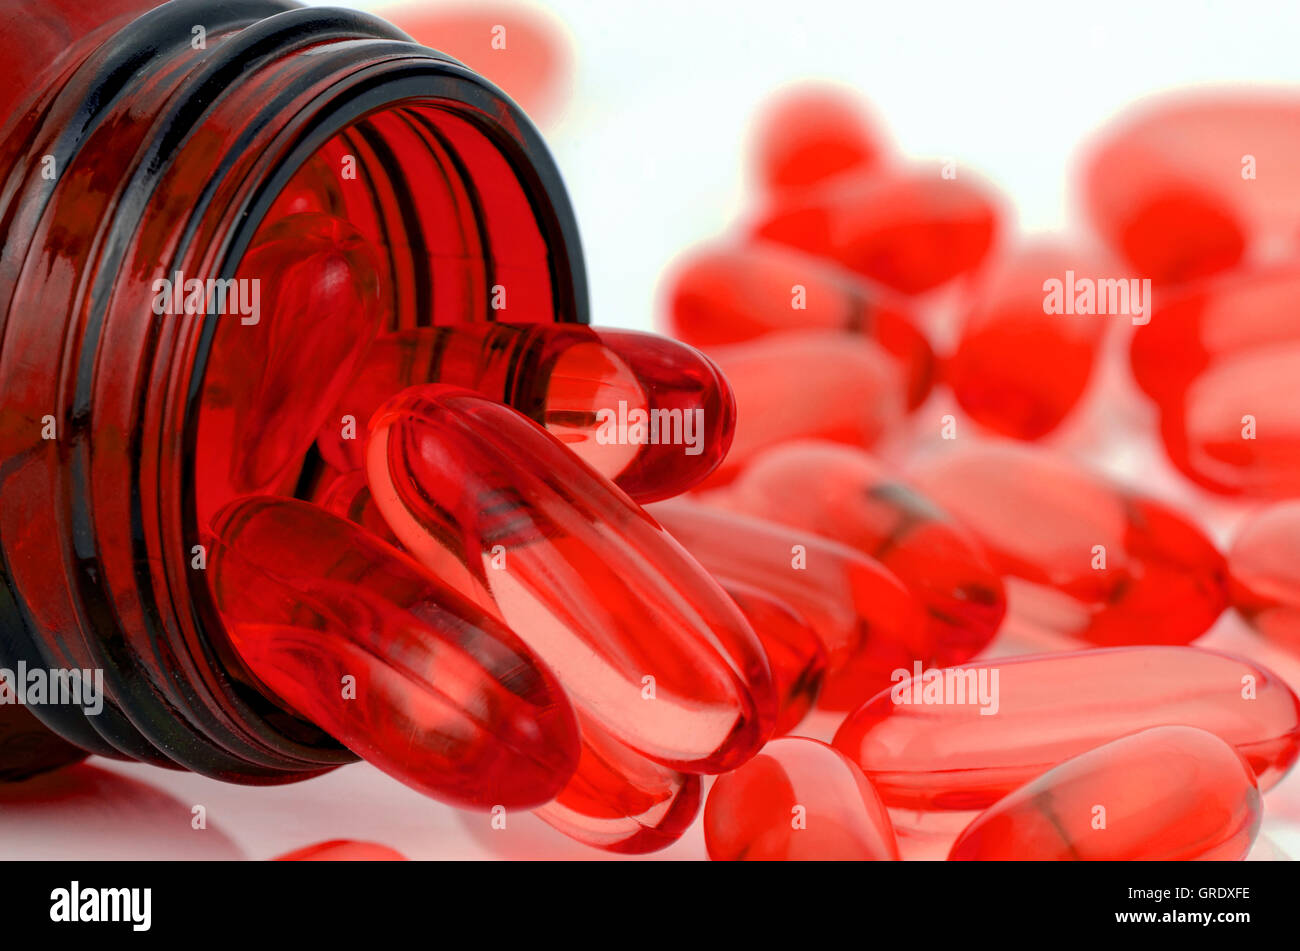 Capsule de gélatine molle rouge utilisation dans la fabrication de produits pharmaceutiques pour contenir des médicaments huileux et complément nutritionnel comme les vitamines A,D,E Banque D'Images